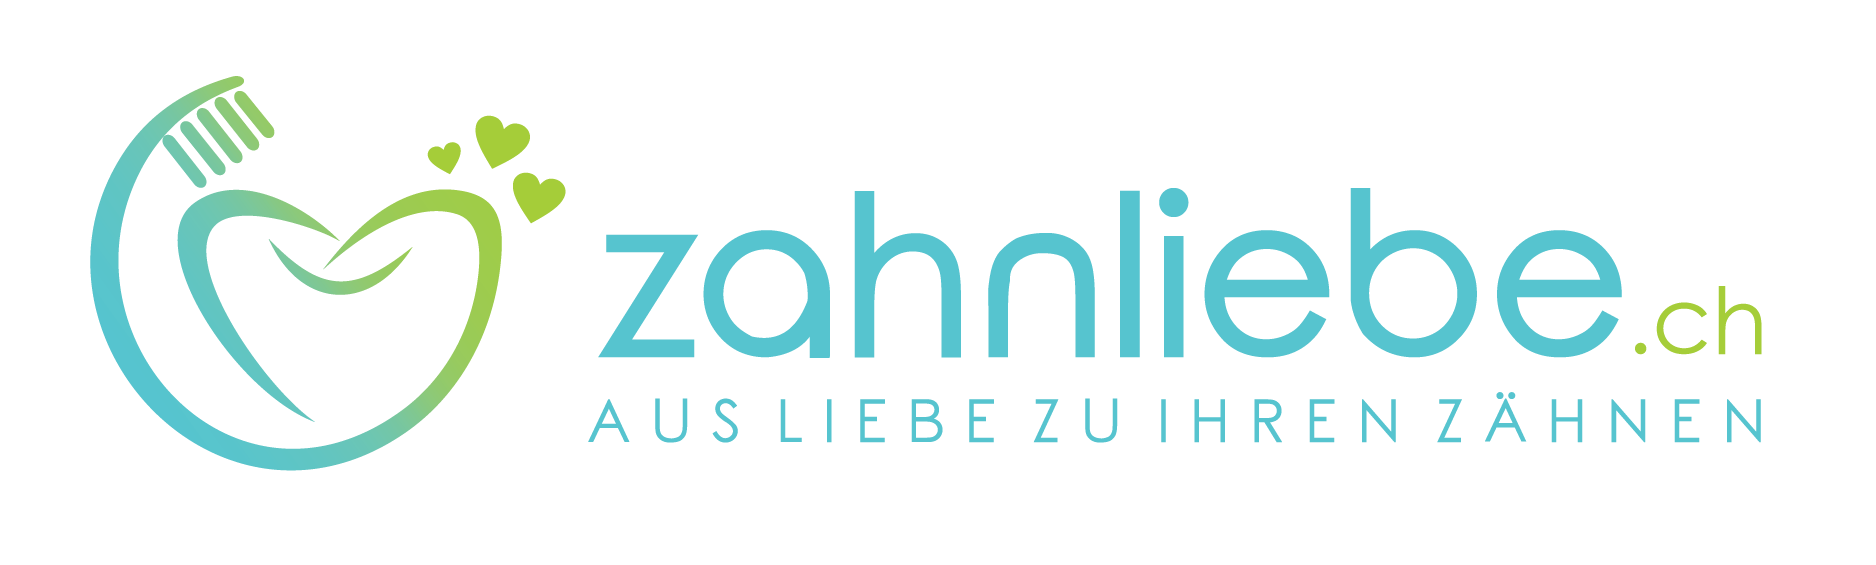 zahnliebe.ch-logo